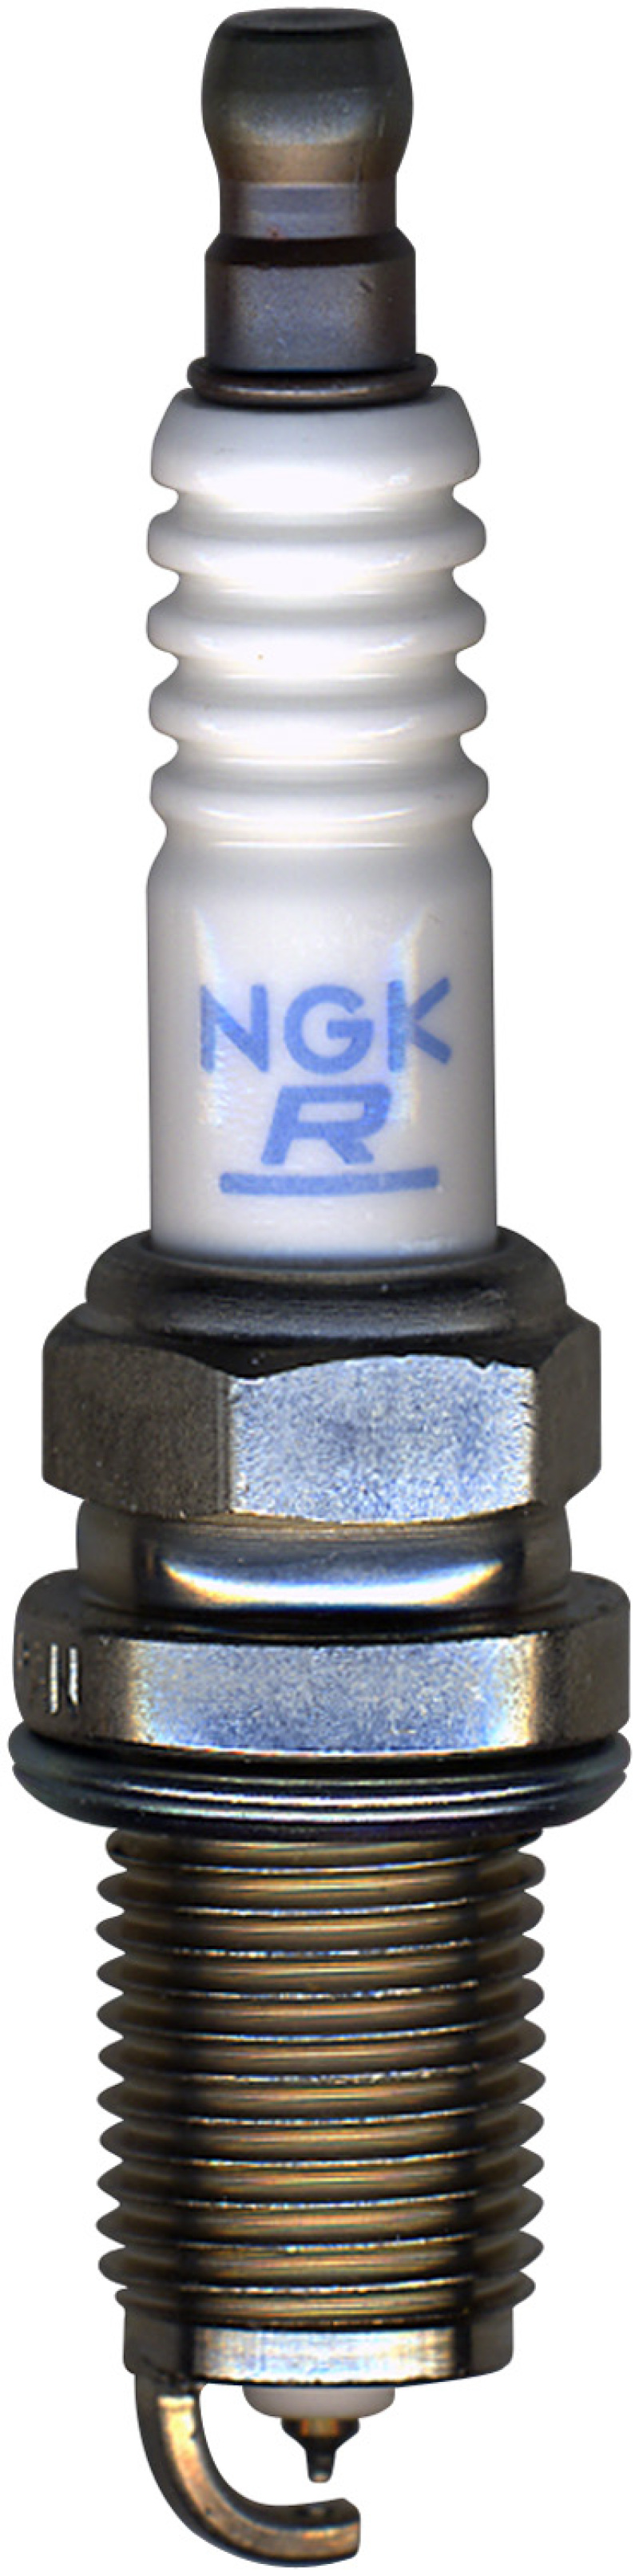 NGK Laser Platinum Spark Plug Box of 4 (PFR7N8DS) - 93580